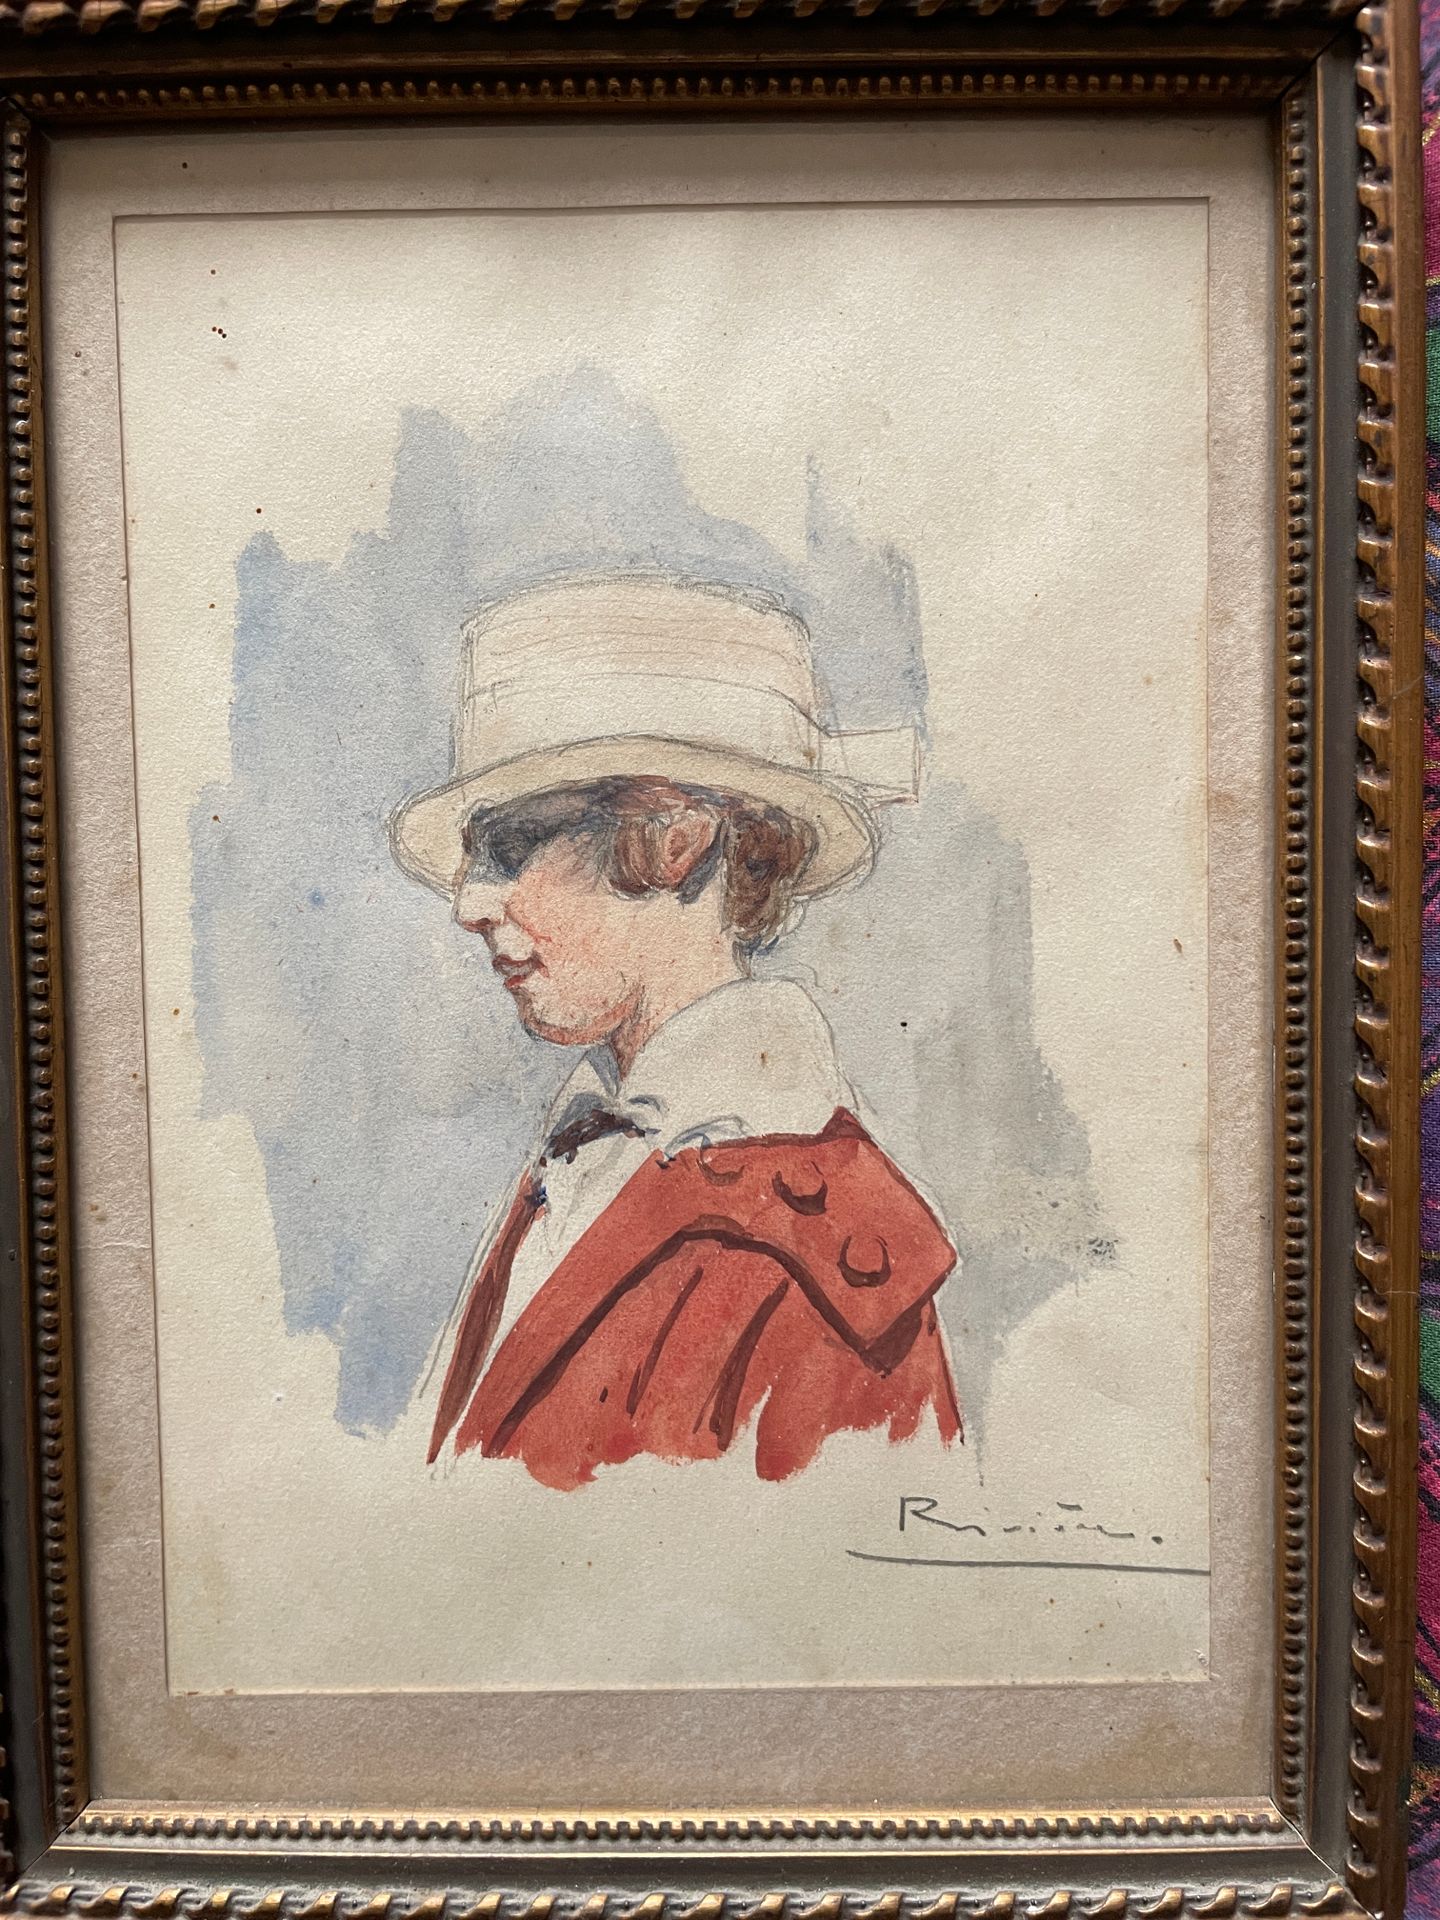 Null RIVIERE Activo en el siglo XX

Mujer con sombrero y traje rojo

Acuarela, l&hellip;